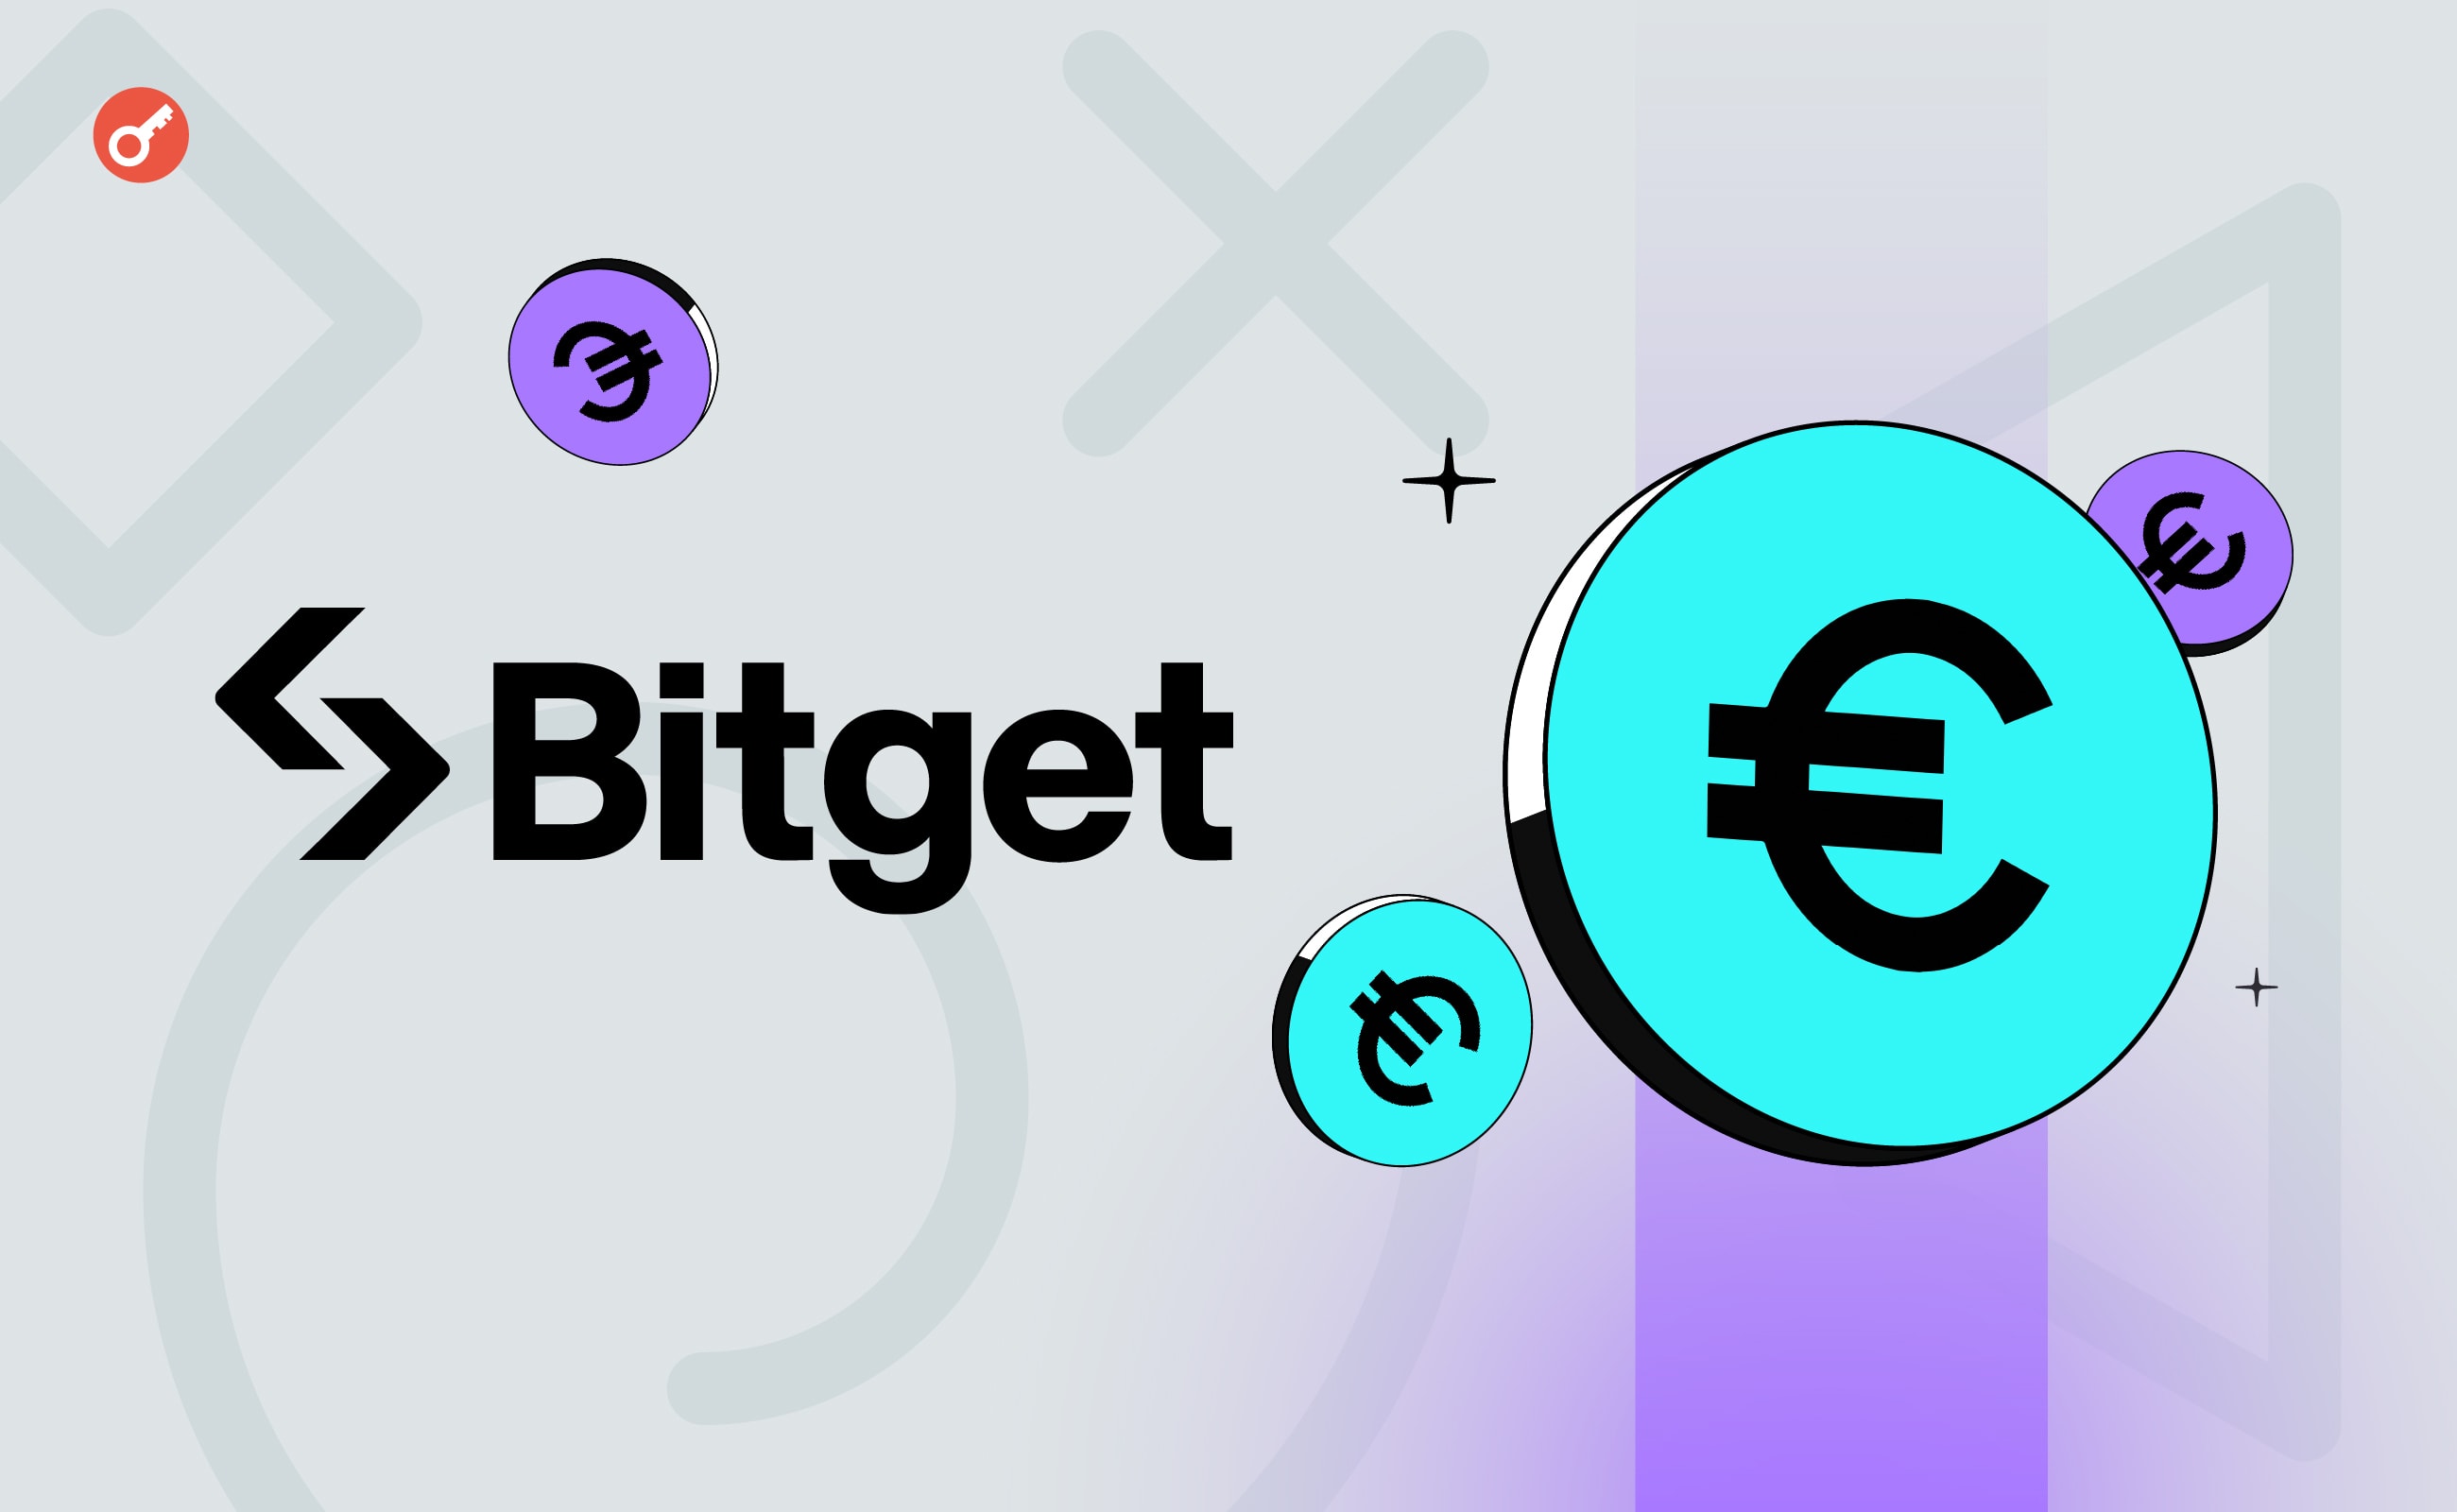 Bitget додала поповнення та зняття коштів у євро для інституційних інвесторів. Головний колаж новини.